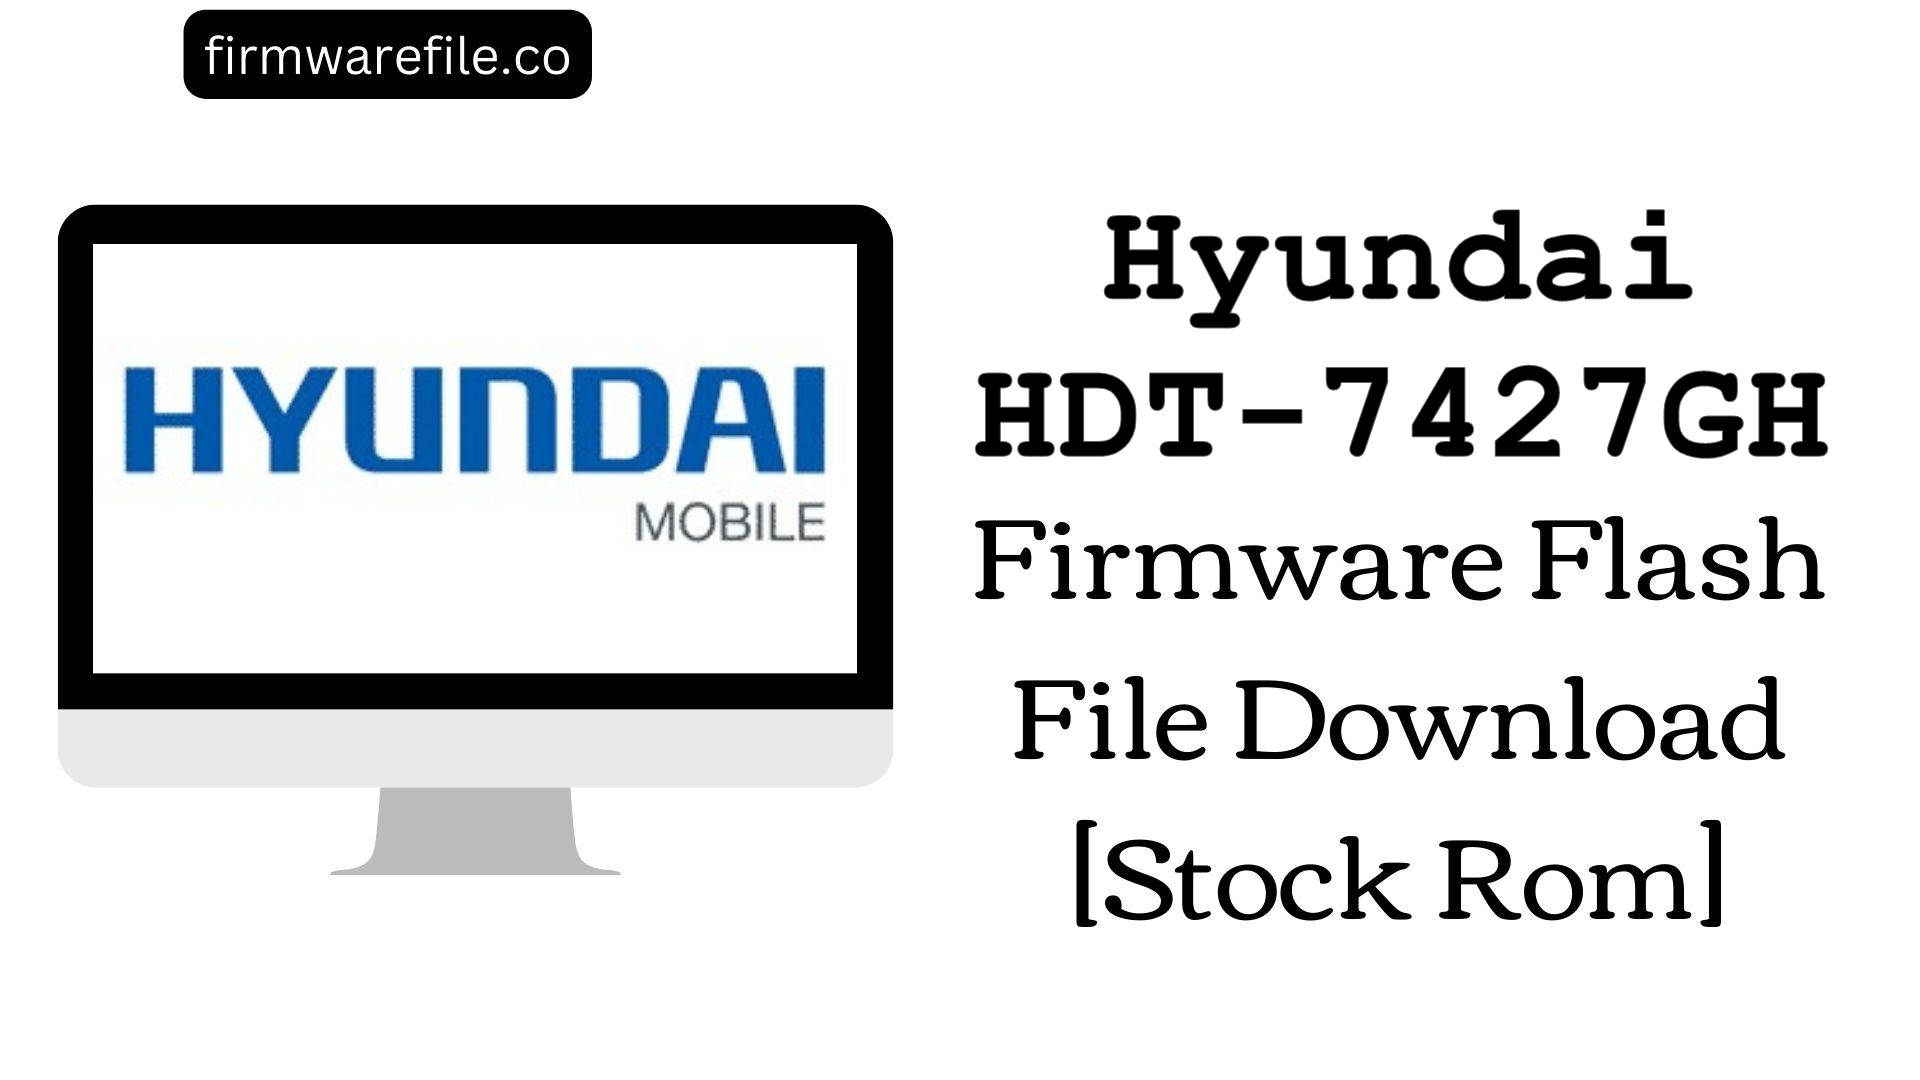 Hyundai HDT 7427GH